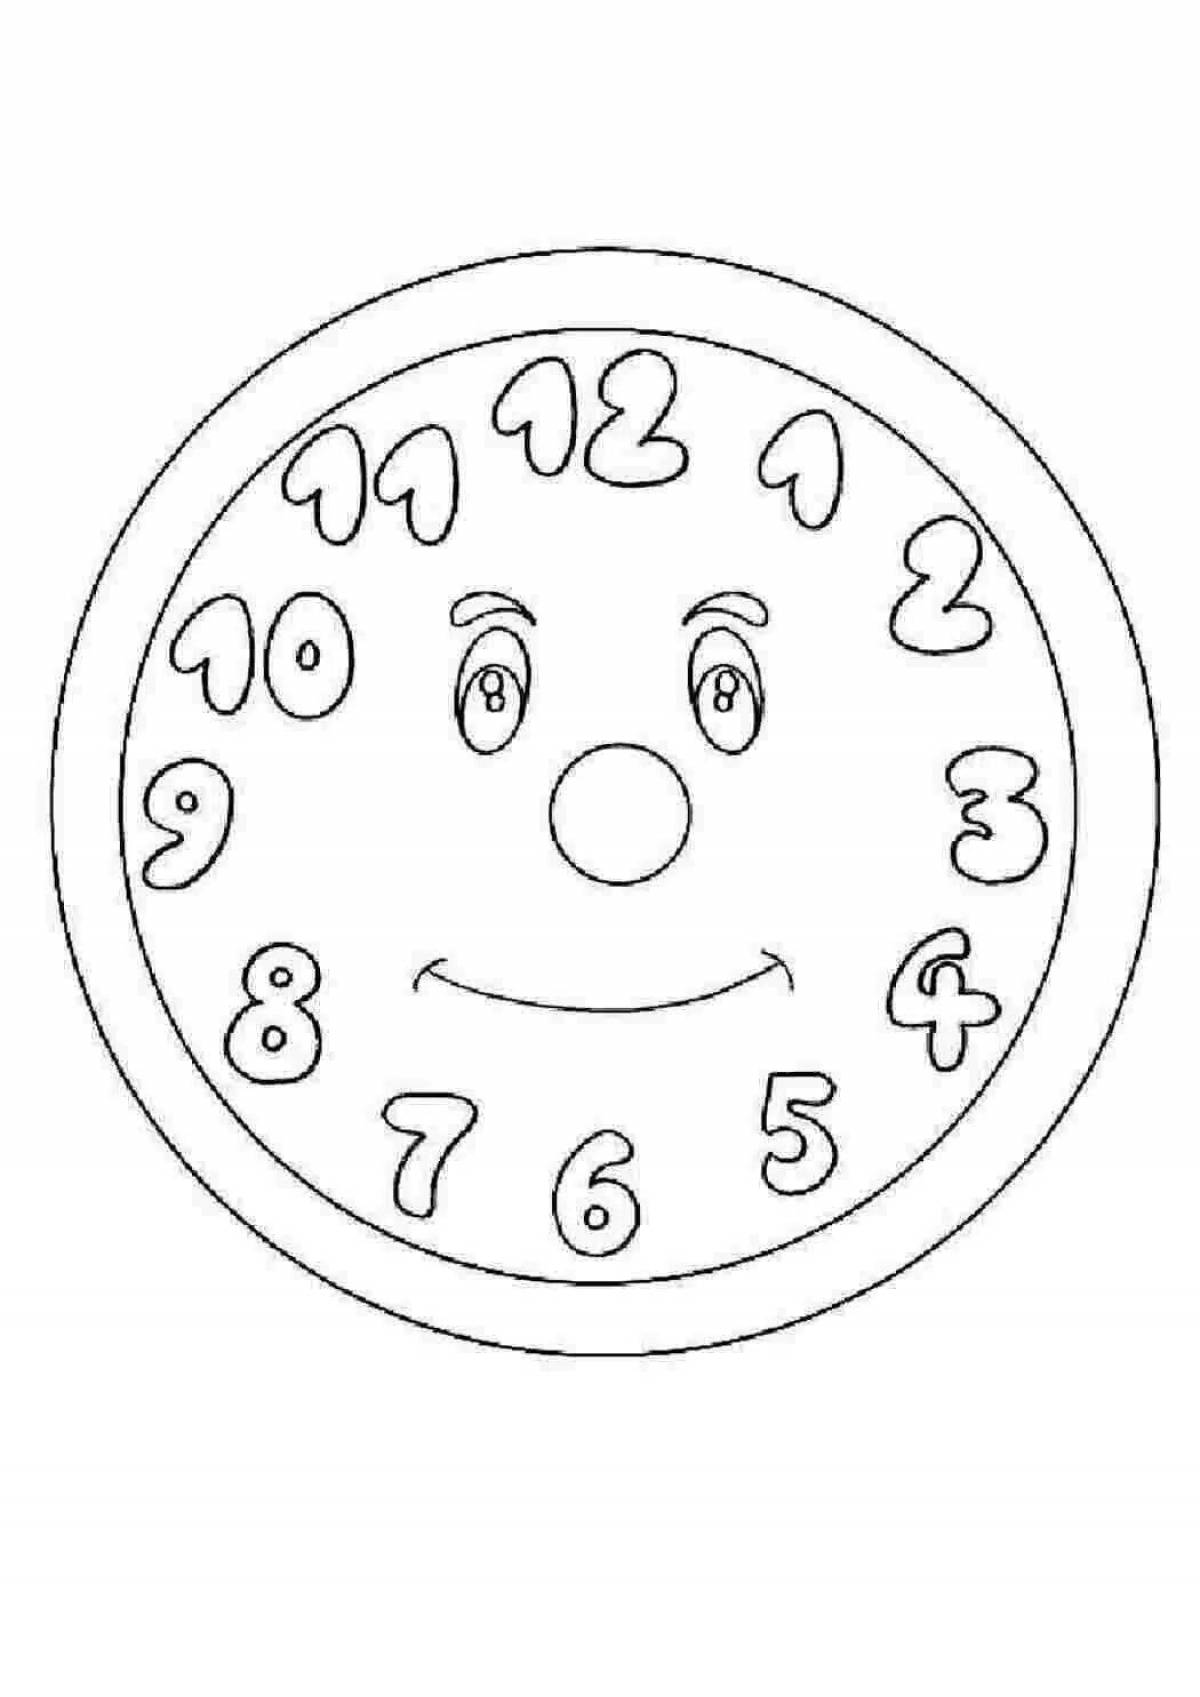 Раскраски часов для детей. Часы раскраска для детей. Циферблат рисунок для детей. Трафарет часы. Раскраска часов для детей.